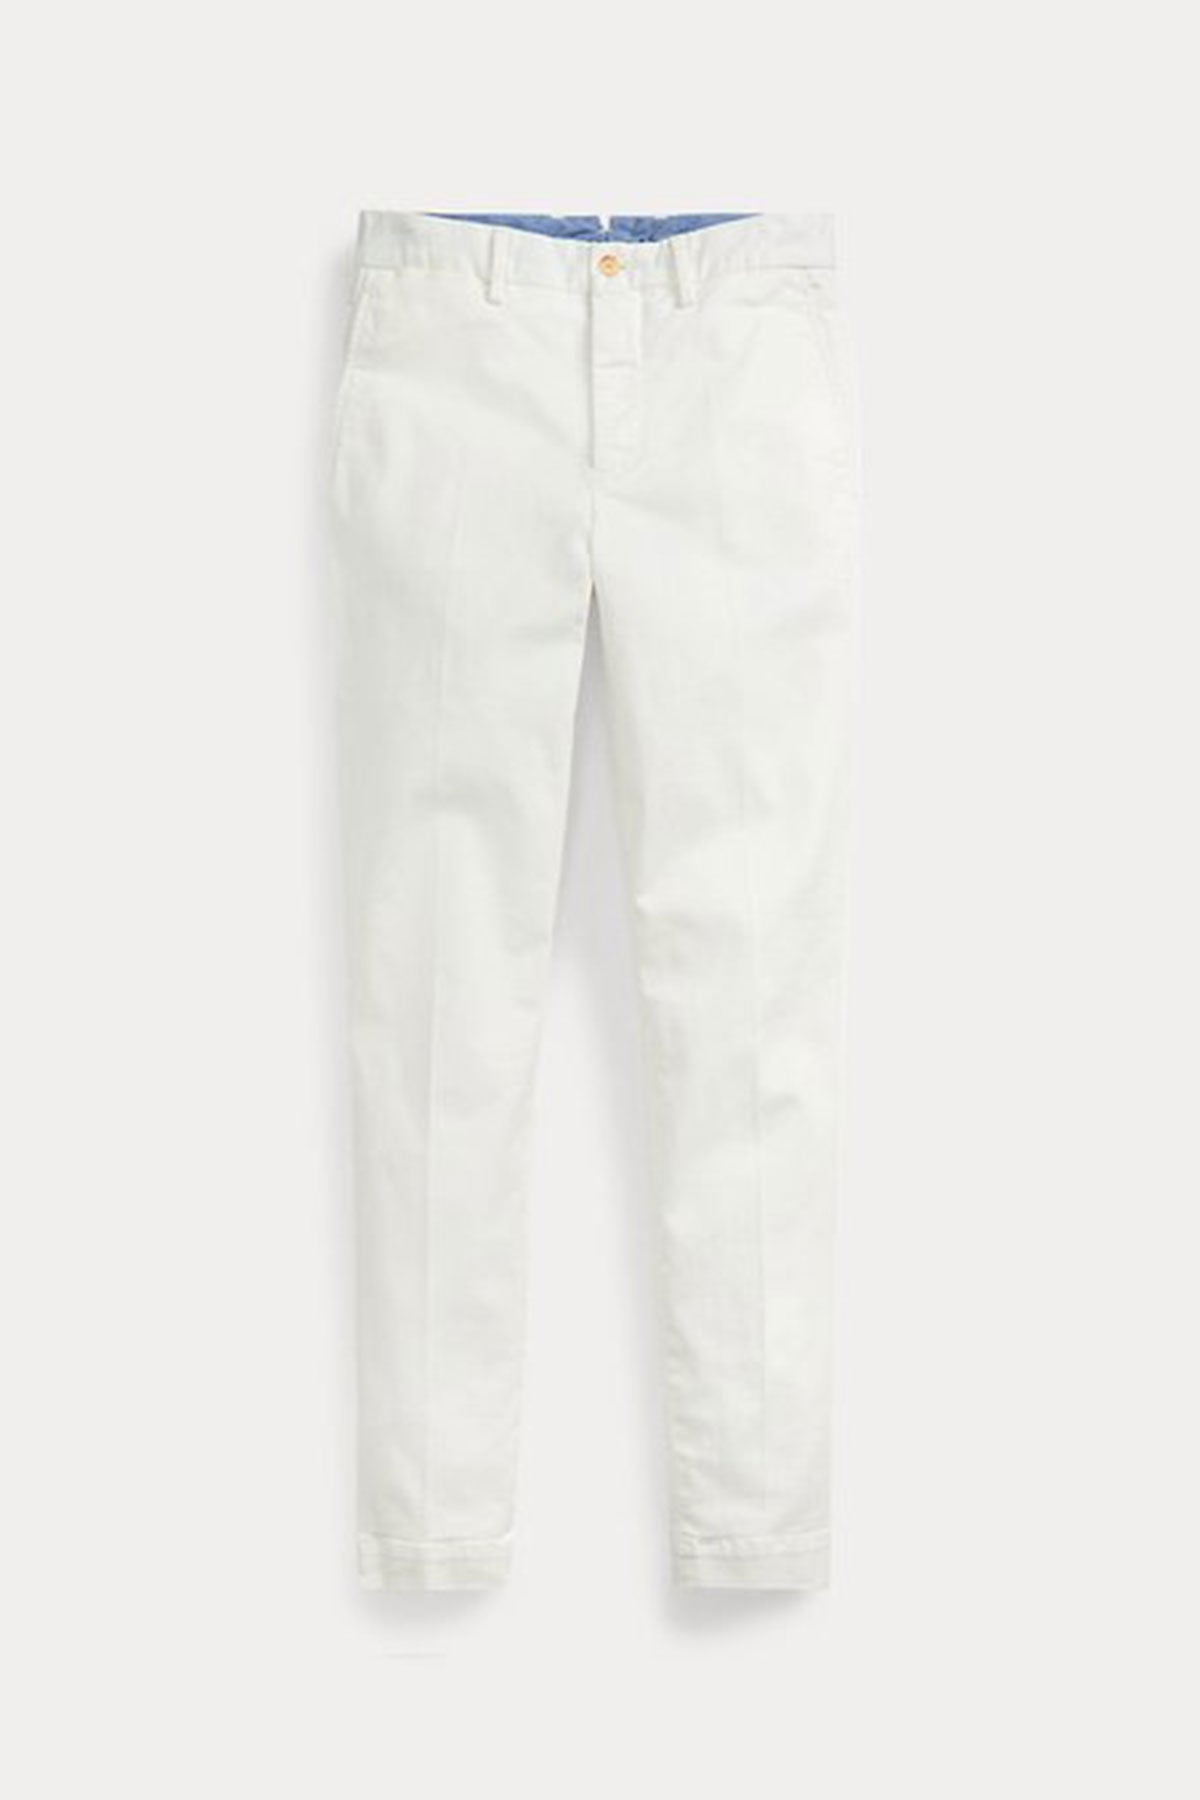 Polo Ralph Lauren Streç Chino Pantolon-Libas Trendy Fashion Store